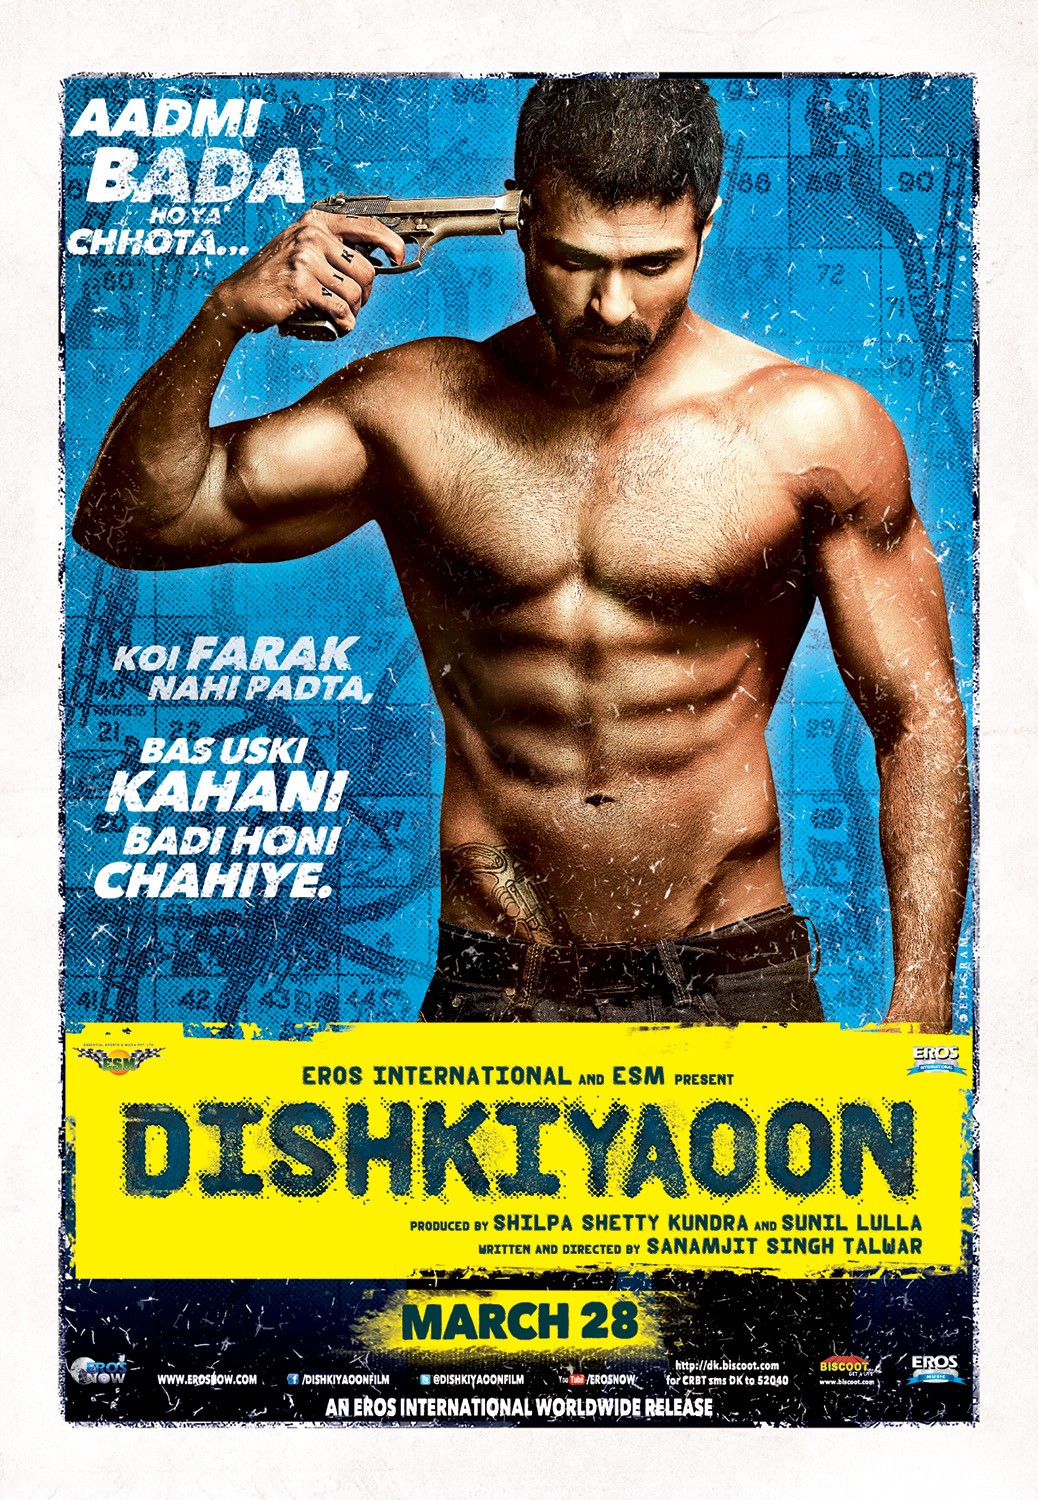 Extra Large Movie Poster Image for Dishkiyaoon (#2 of 5)